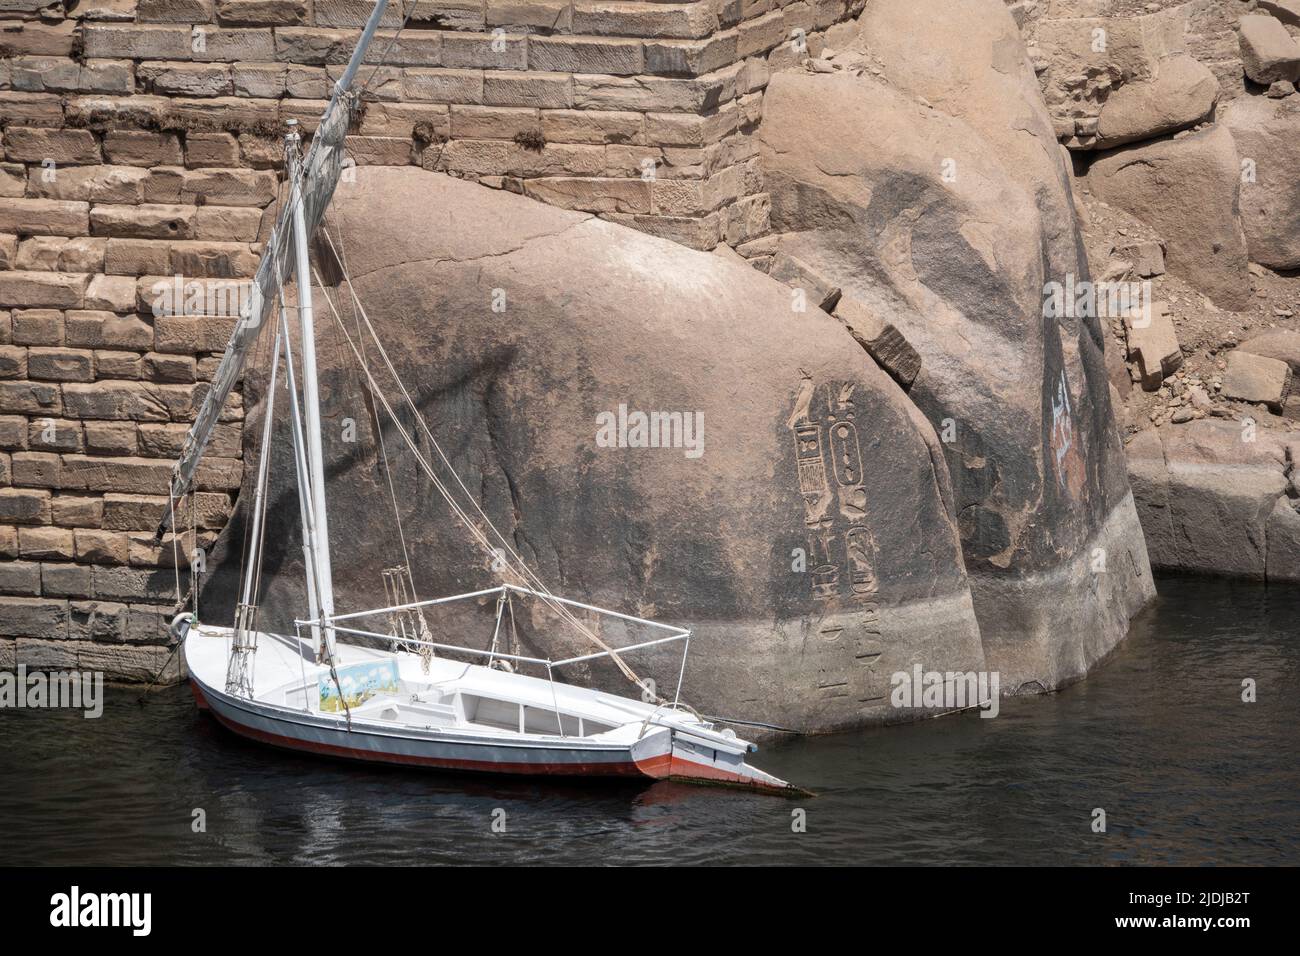 Felucca amarrada en Asuán frente a las rocas de granito con inscripciones faraónicas, Egipto Foto de stock